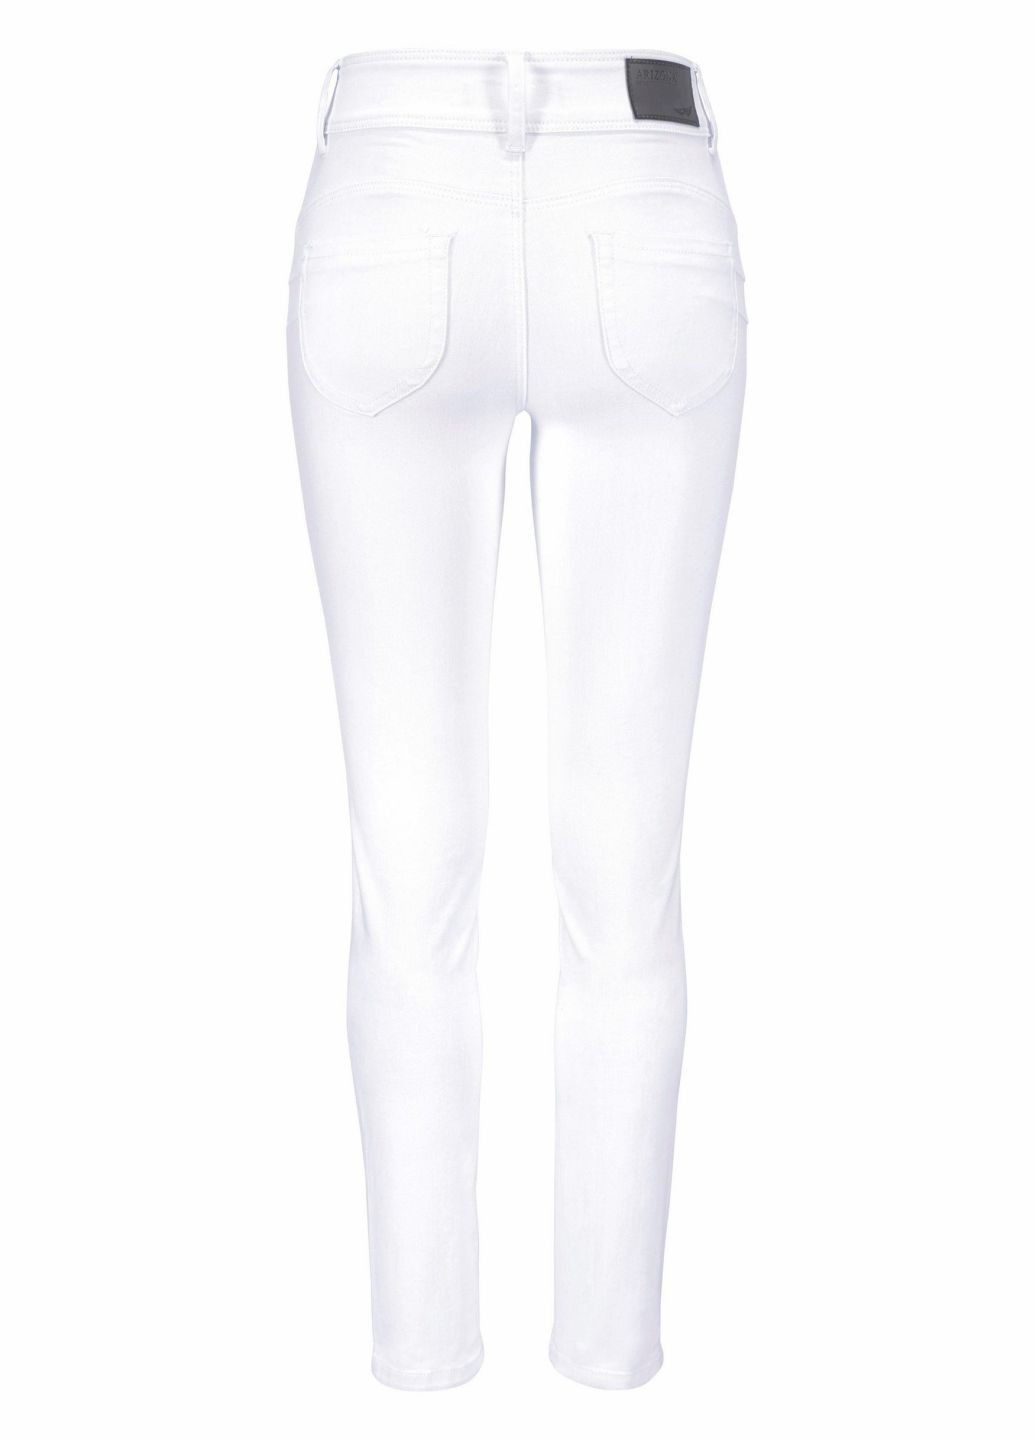 Белые демисезонные скинни джинсы Arizona